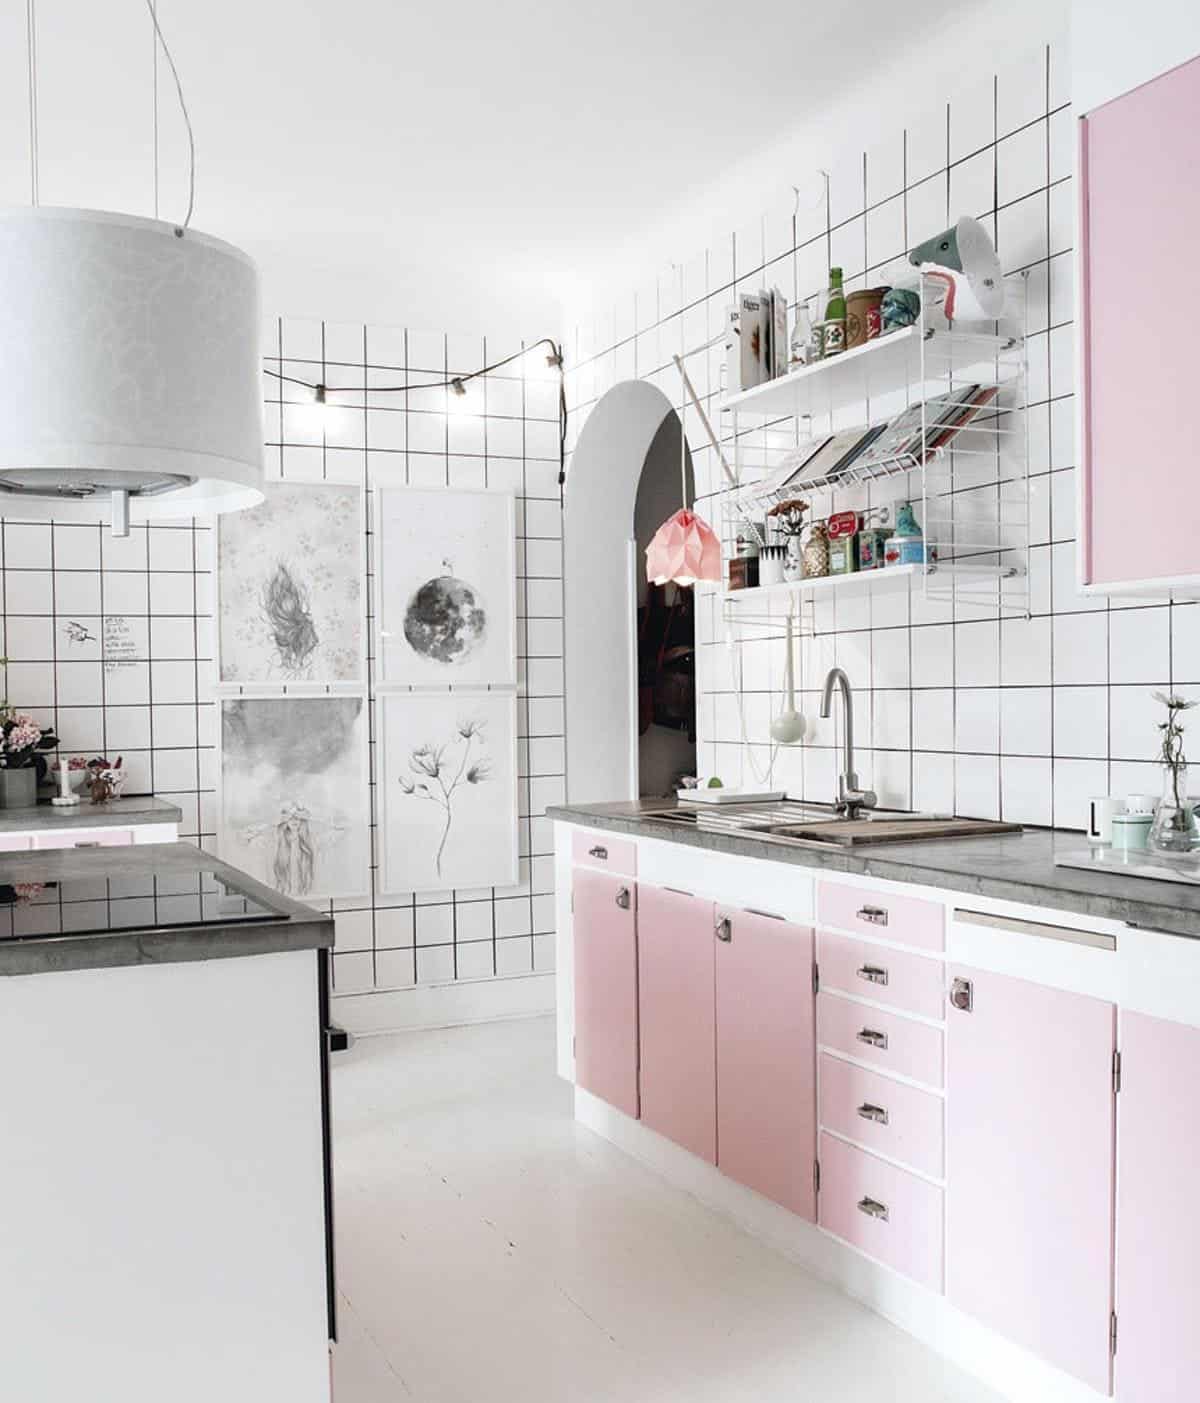  thiết kế phòng bếp tông màu pastel hồng